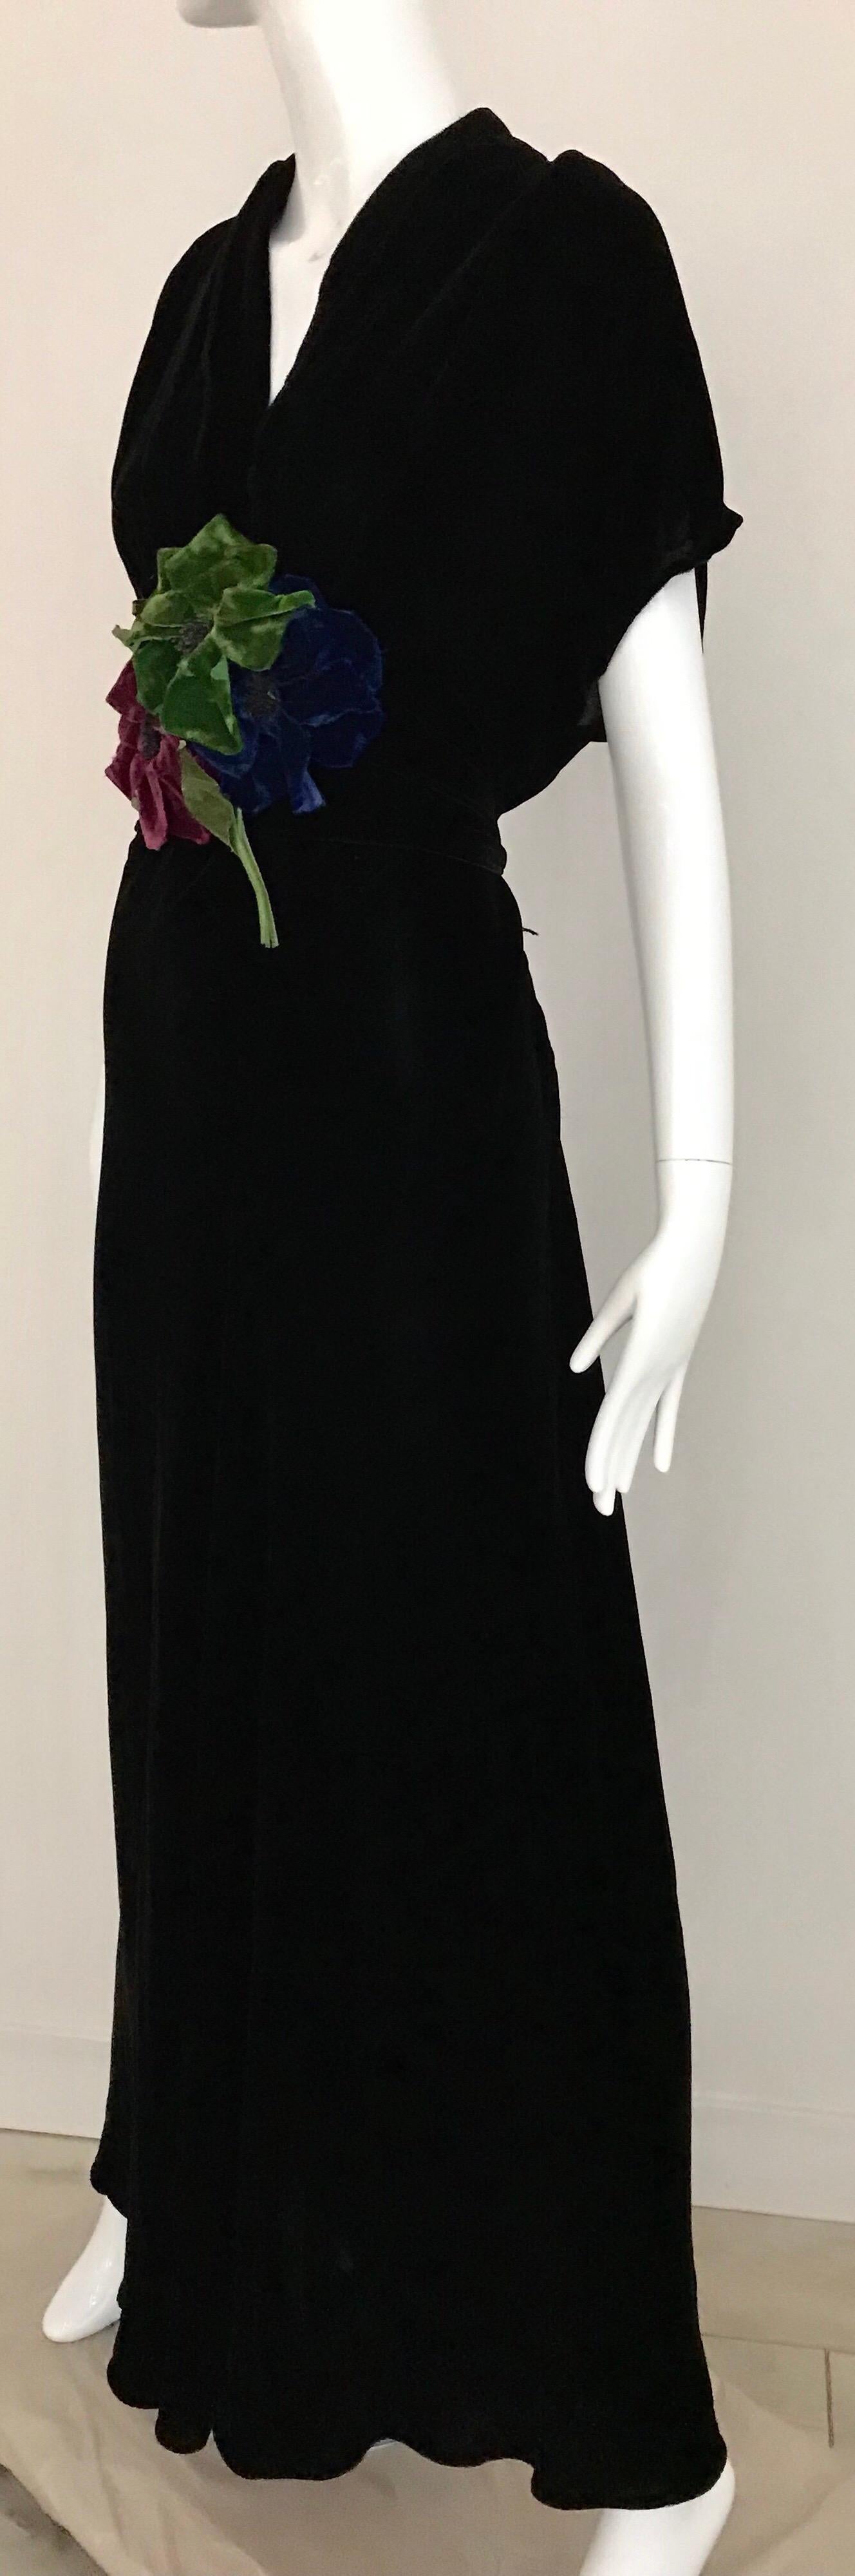 1930s Black Velvet Dress with Floral Appliqué  1